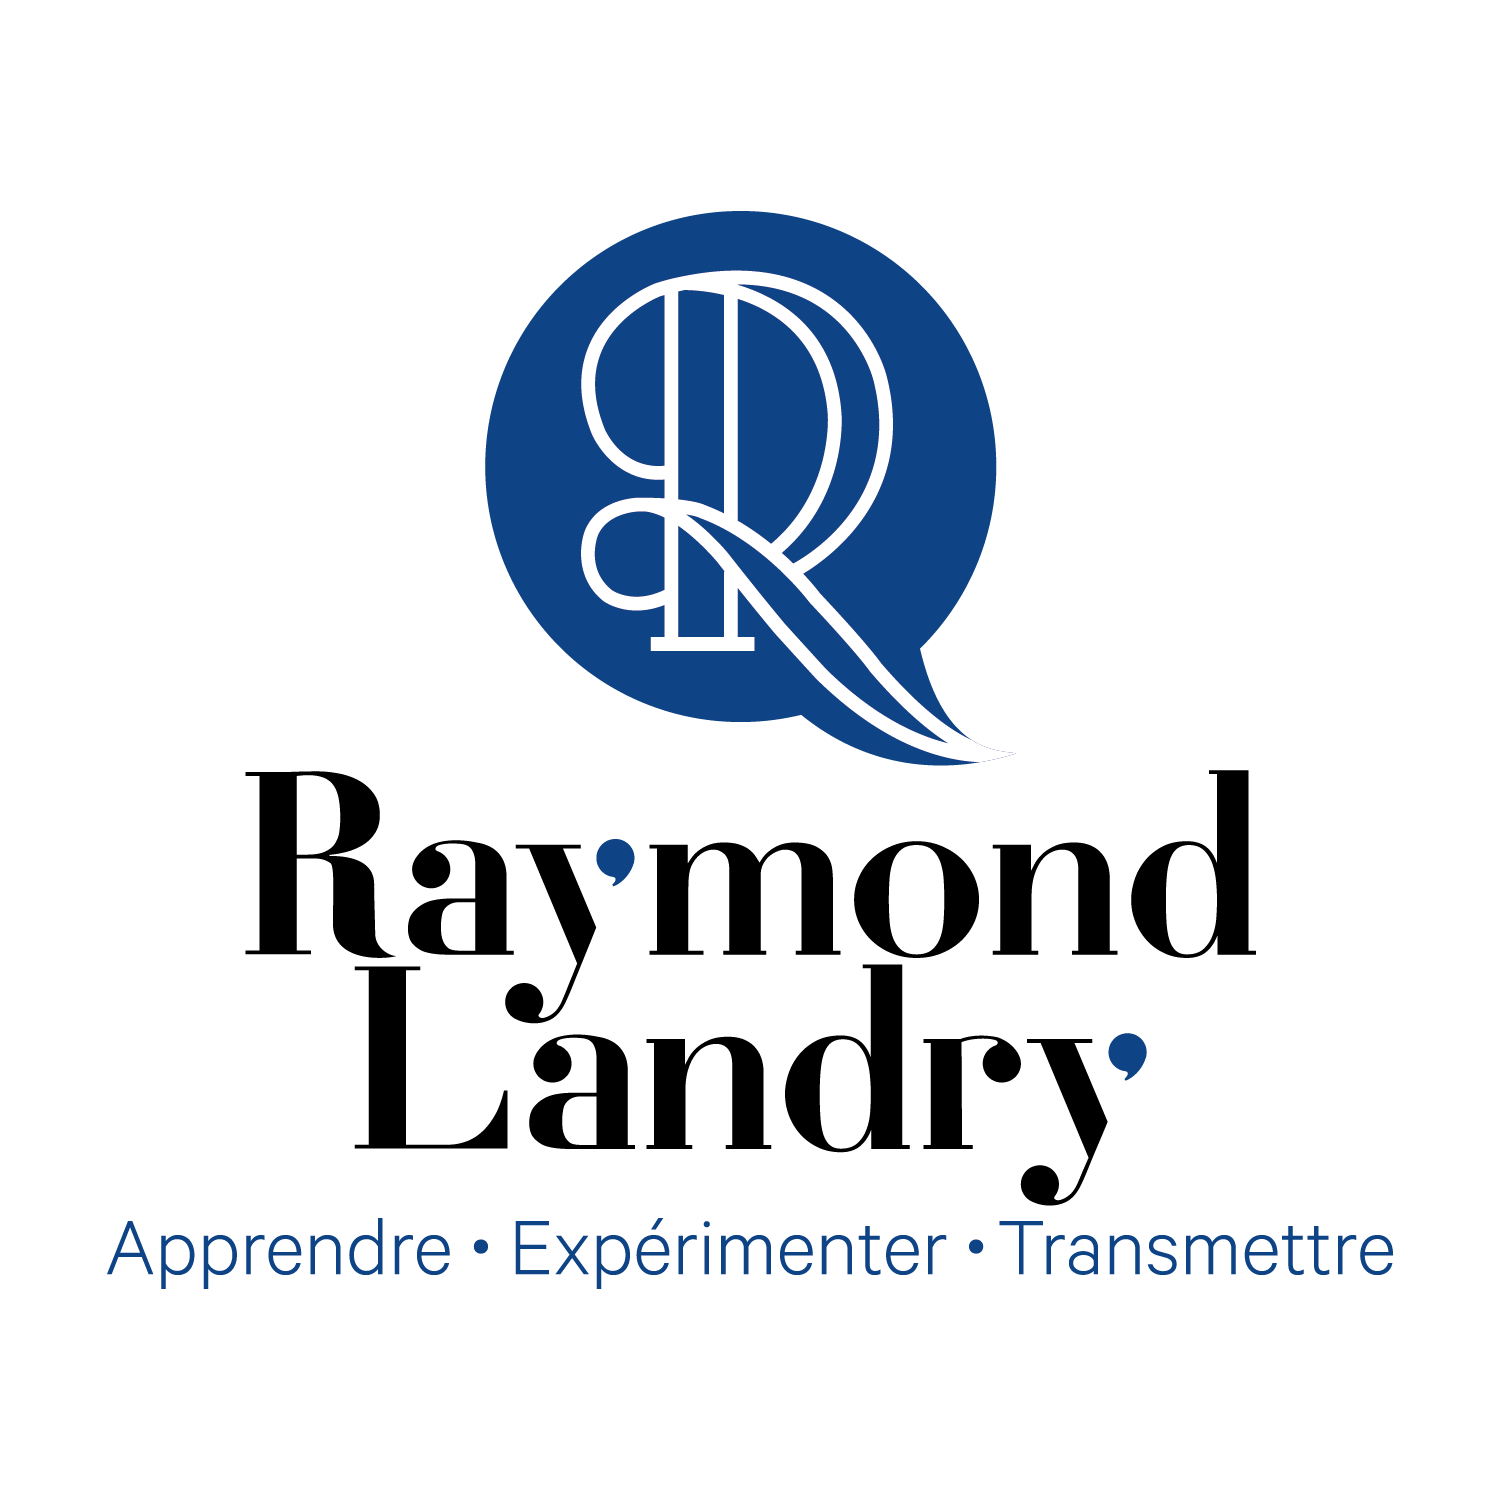 Le logo de Raymond Landry est un cercle bleu avec une lettre r dedans.